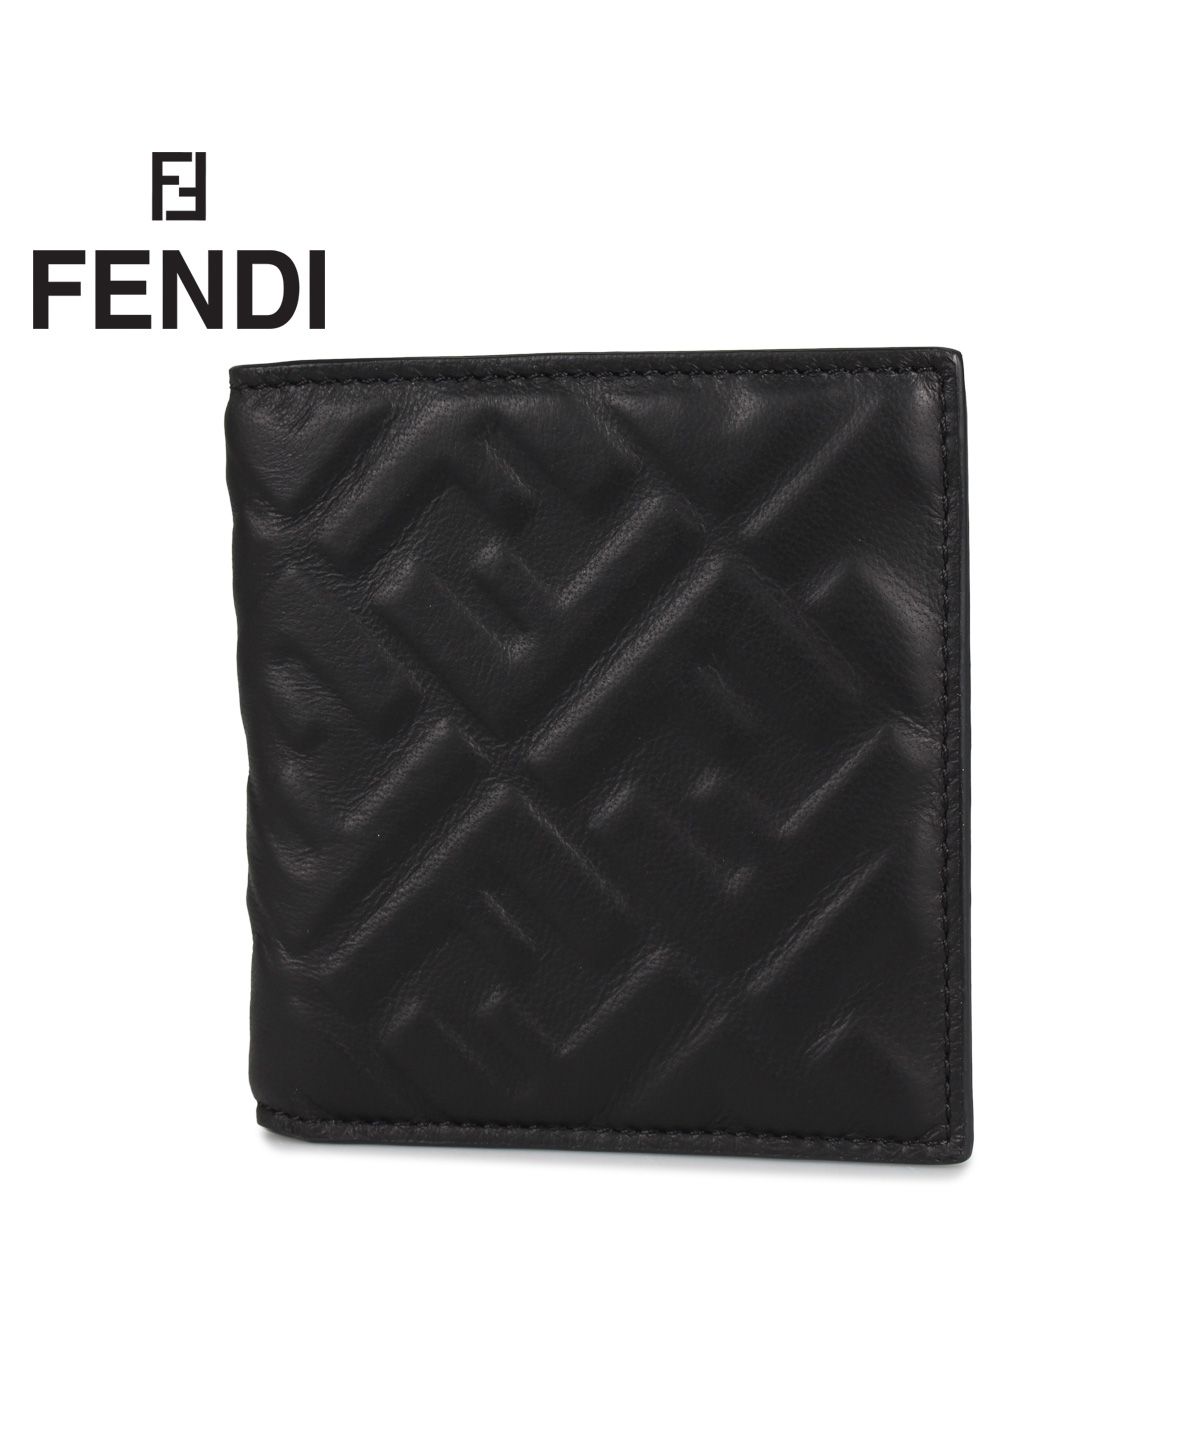 フェンディ FENDI 財布 二つ折り メンズ レディース イタリア製 WALLET ブラック 黒 7M0274A72V